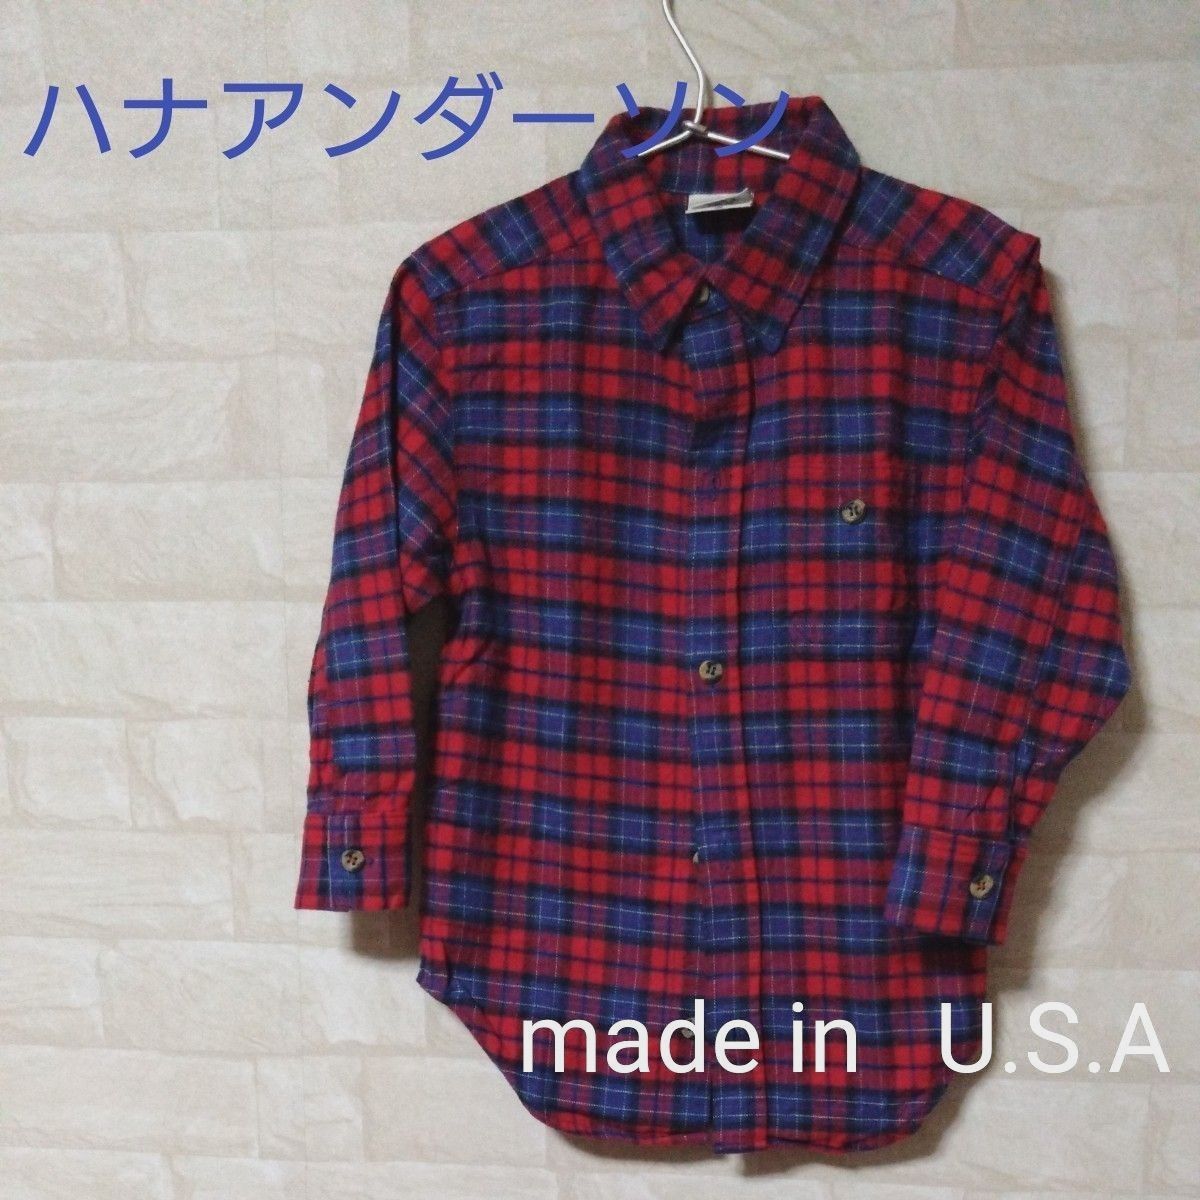 ハナアンダーソン  キッズシャツ100サイズ    made inU.S.A  おまけ付き